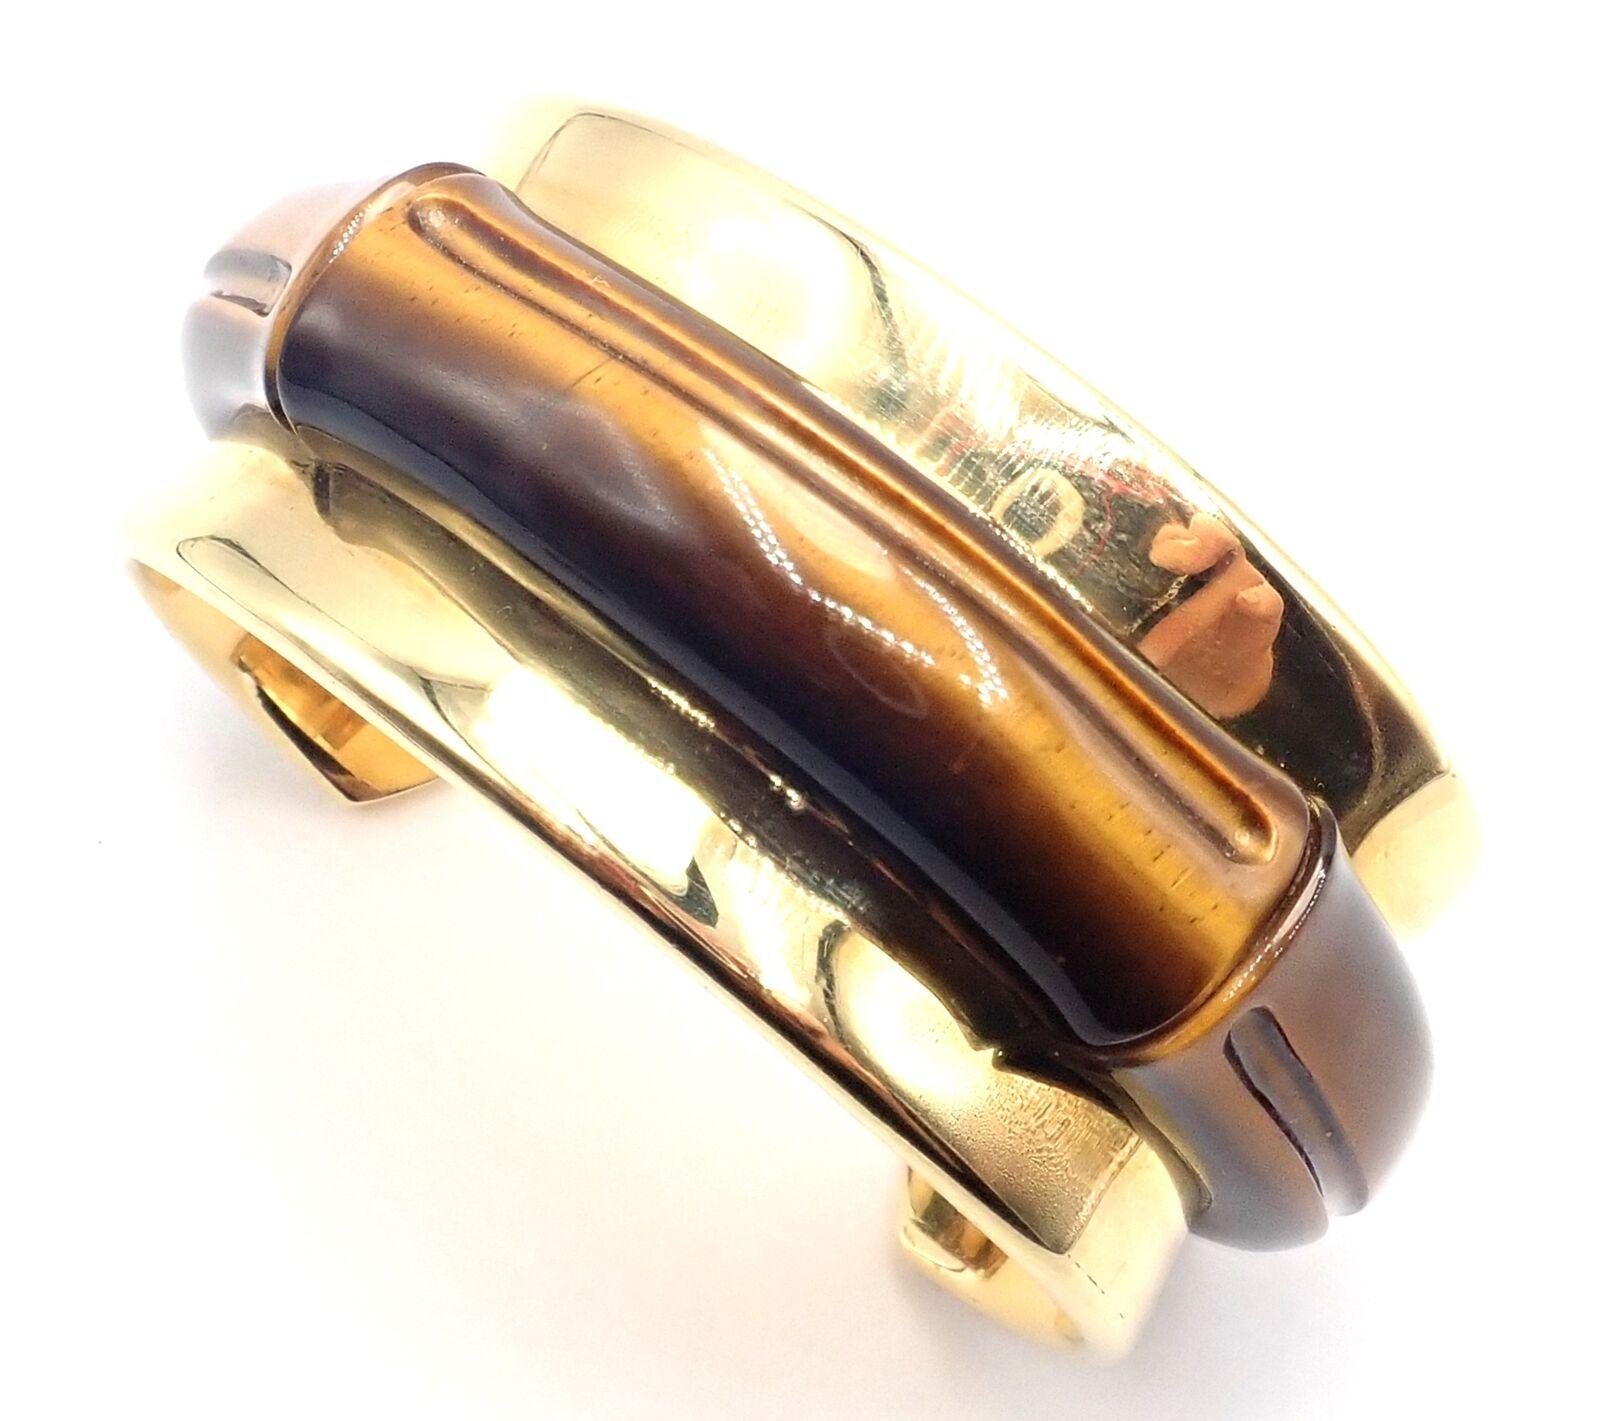 18k Gelbgold Tiger's Eye Cuff Bangle Armband von Tiffany & Co 2002.
Mit Tigerauge Stein.
Einzelheiten: 
Gewicht: 87,4 Gramm
Länge: 7